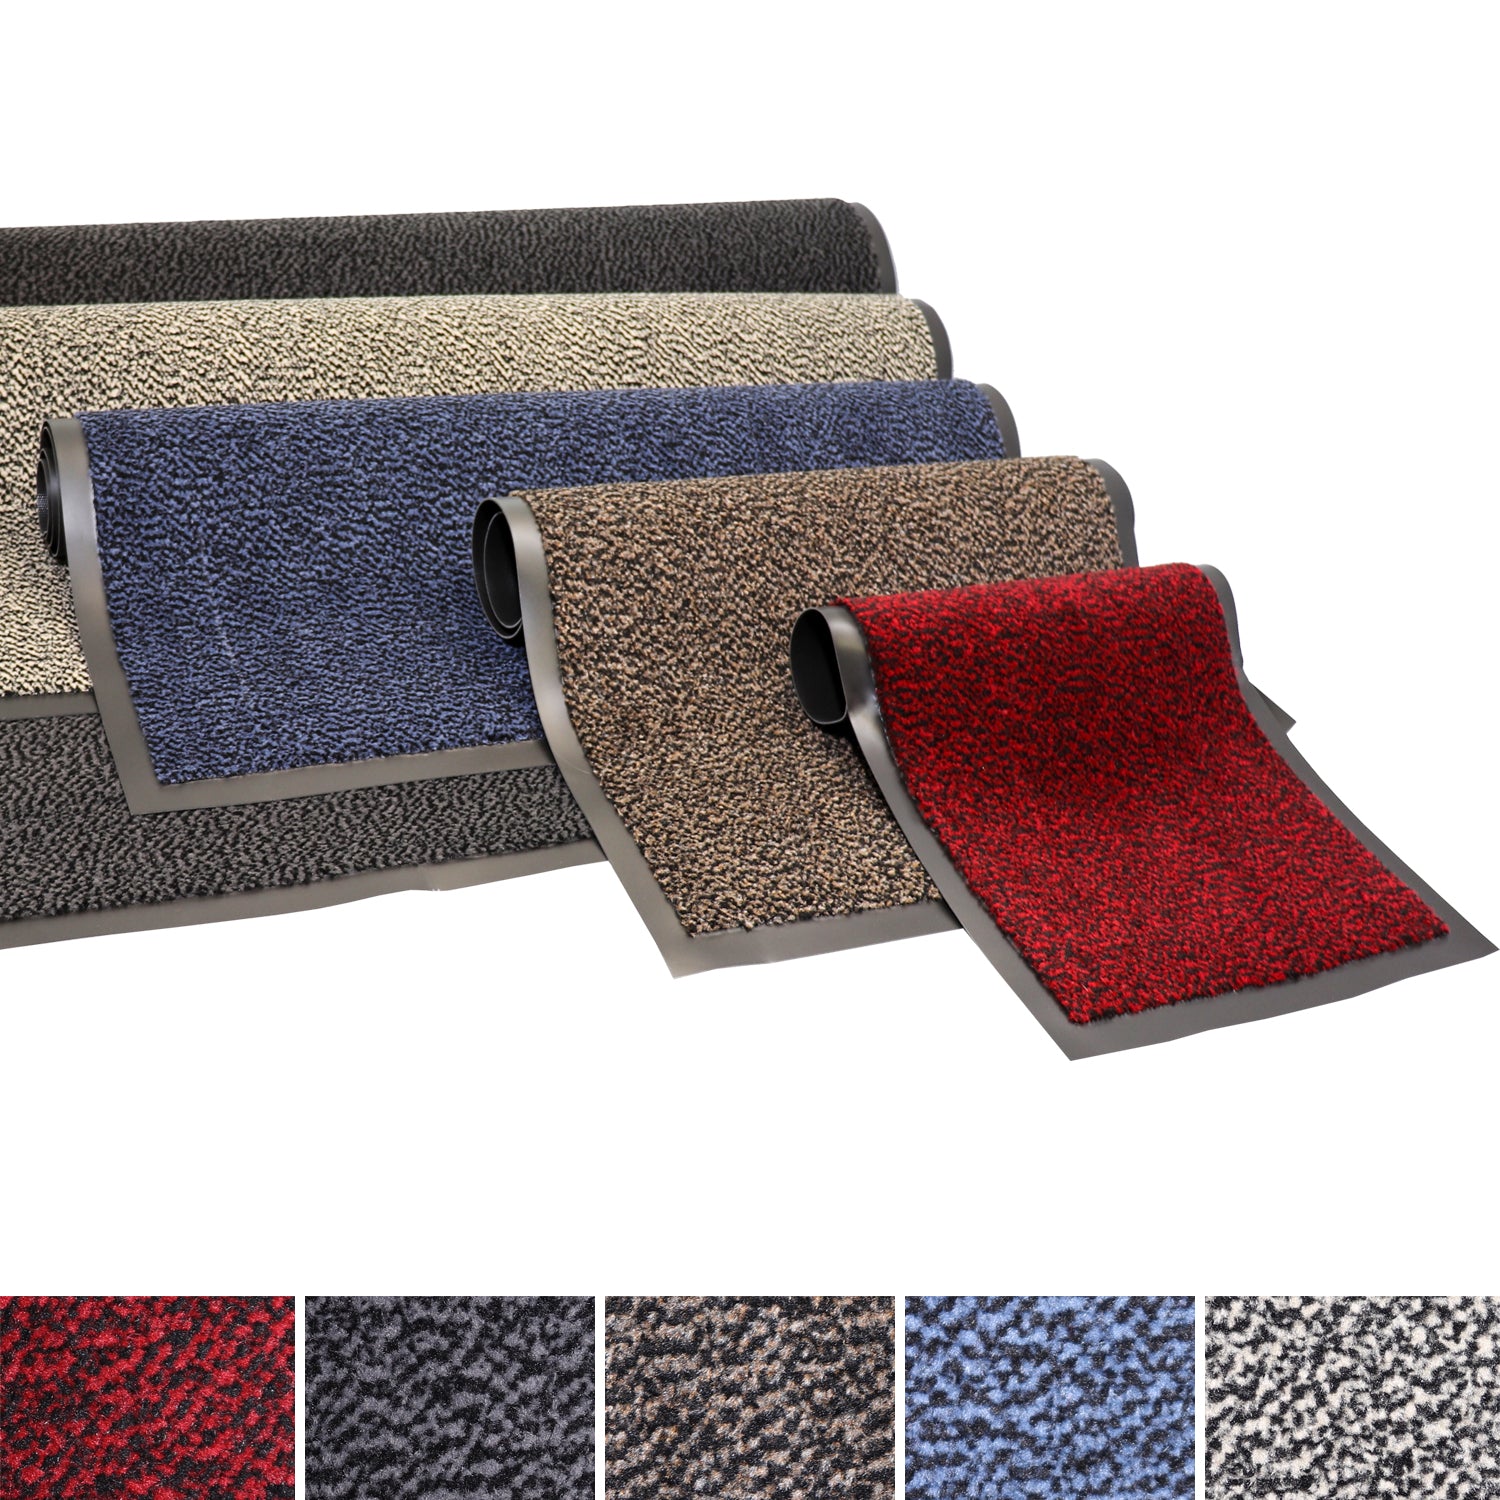 P24® Fußmatte - Schmutzfangmatte in vielen Farben und Größen